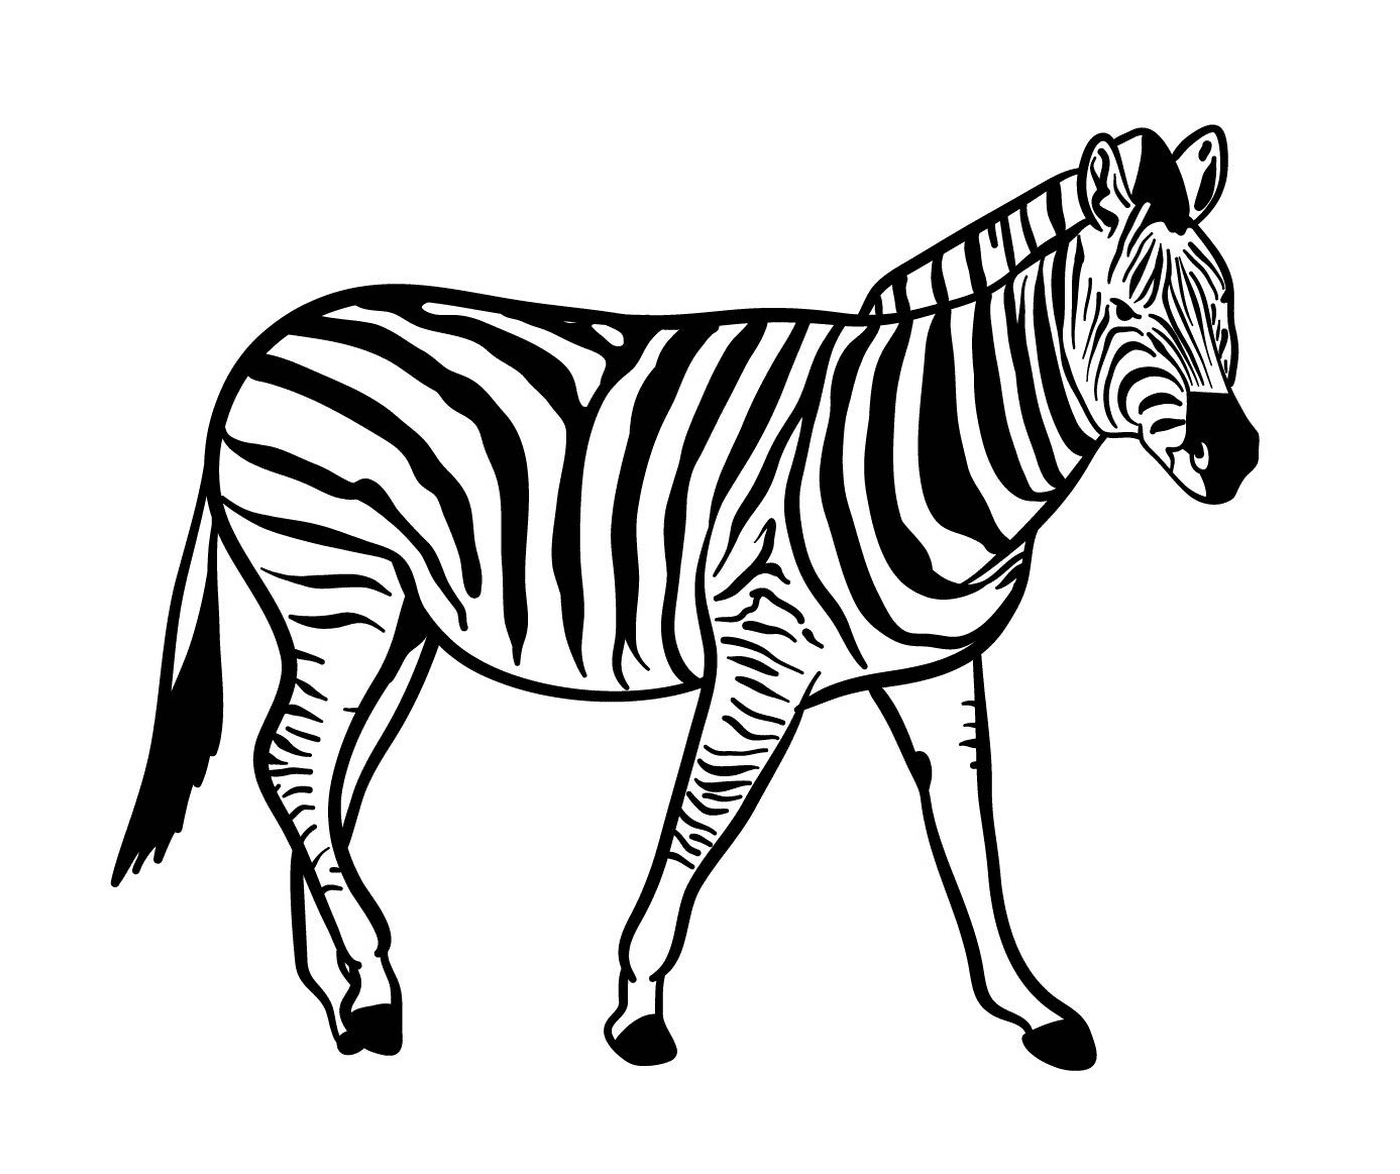  A Zebra 